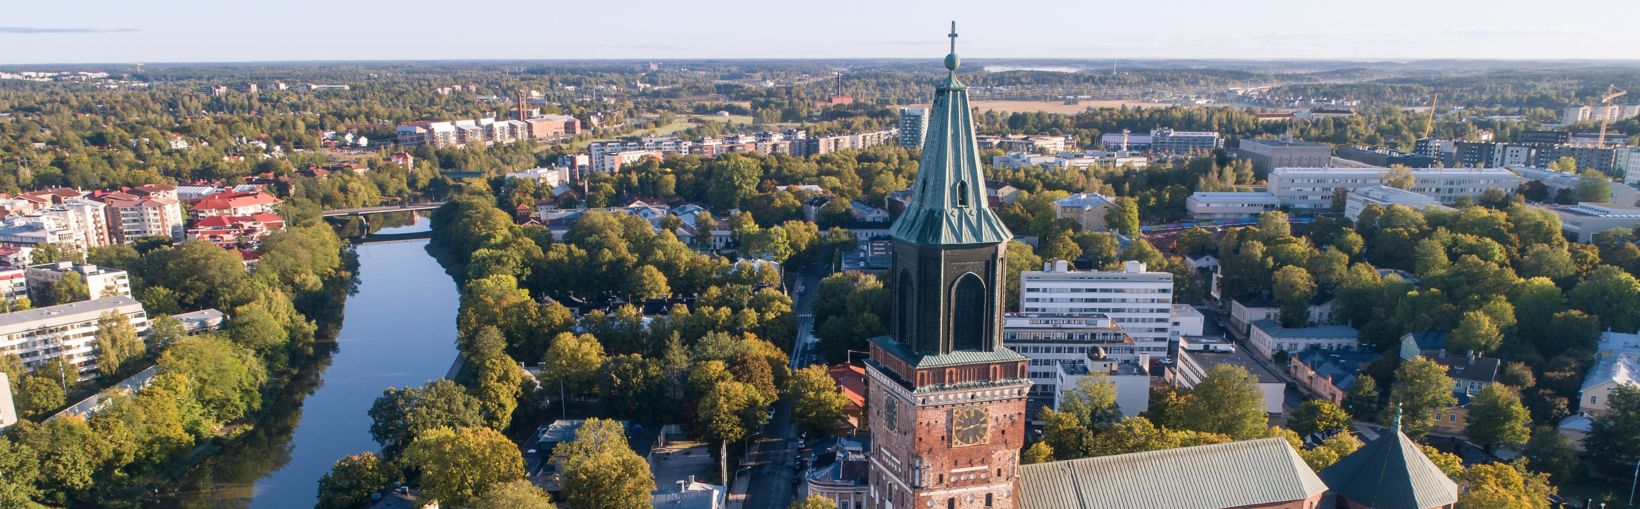 Turku katedros vaizdas iš paukščio skrydžio vasaros rytą, Suomija